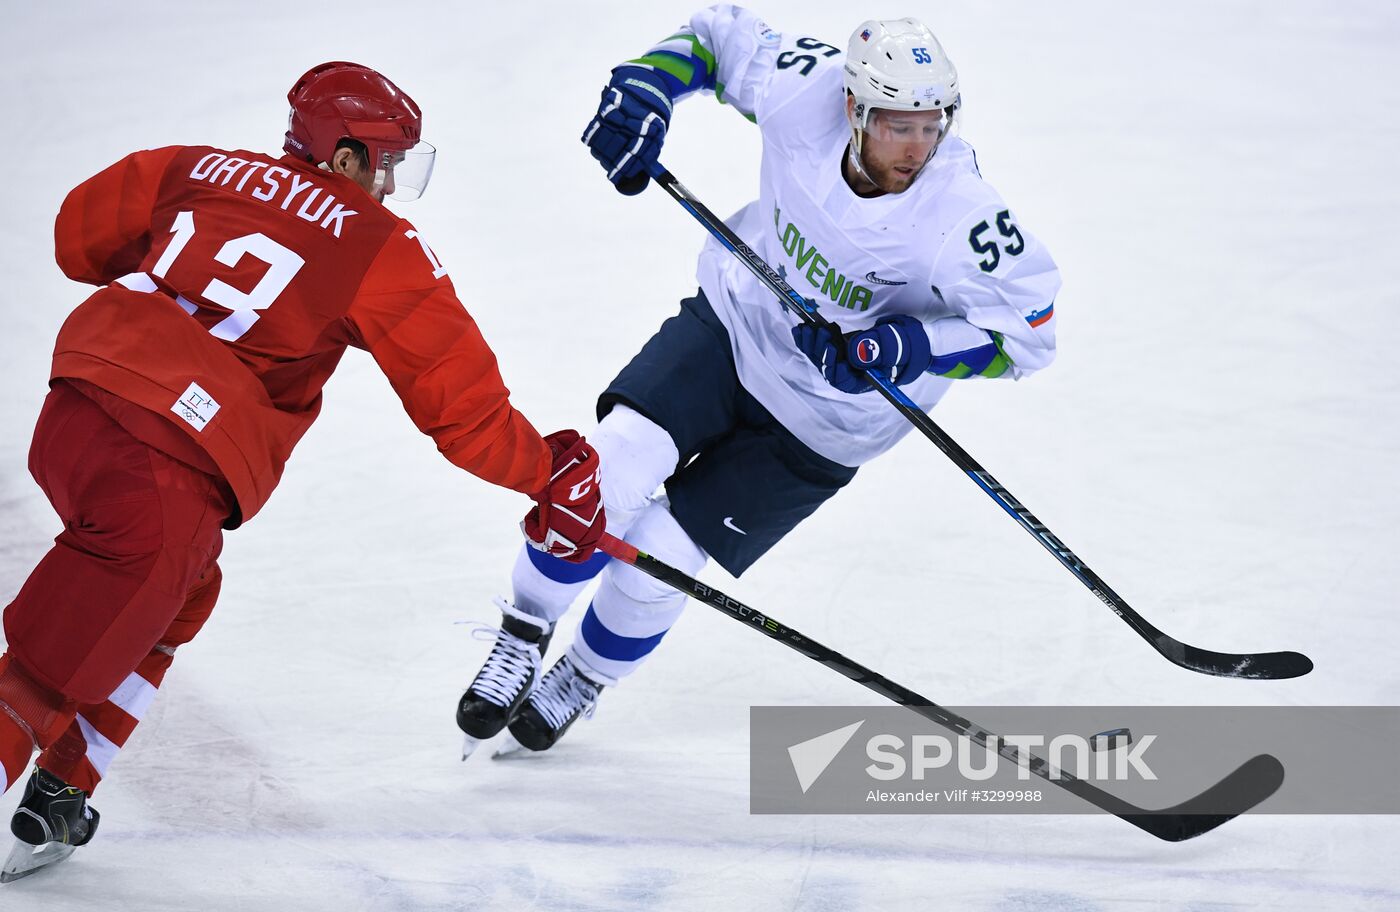 2018 Winter Olympics. Ice hockey. Men. Russia vs. Slovenia